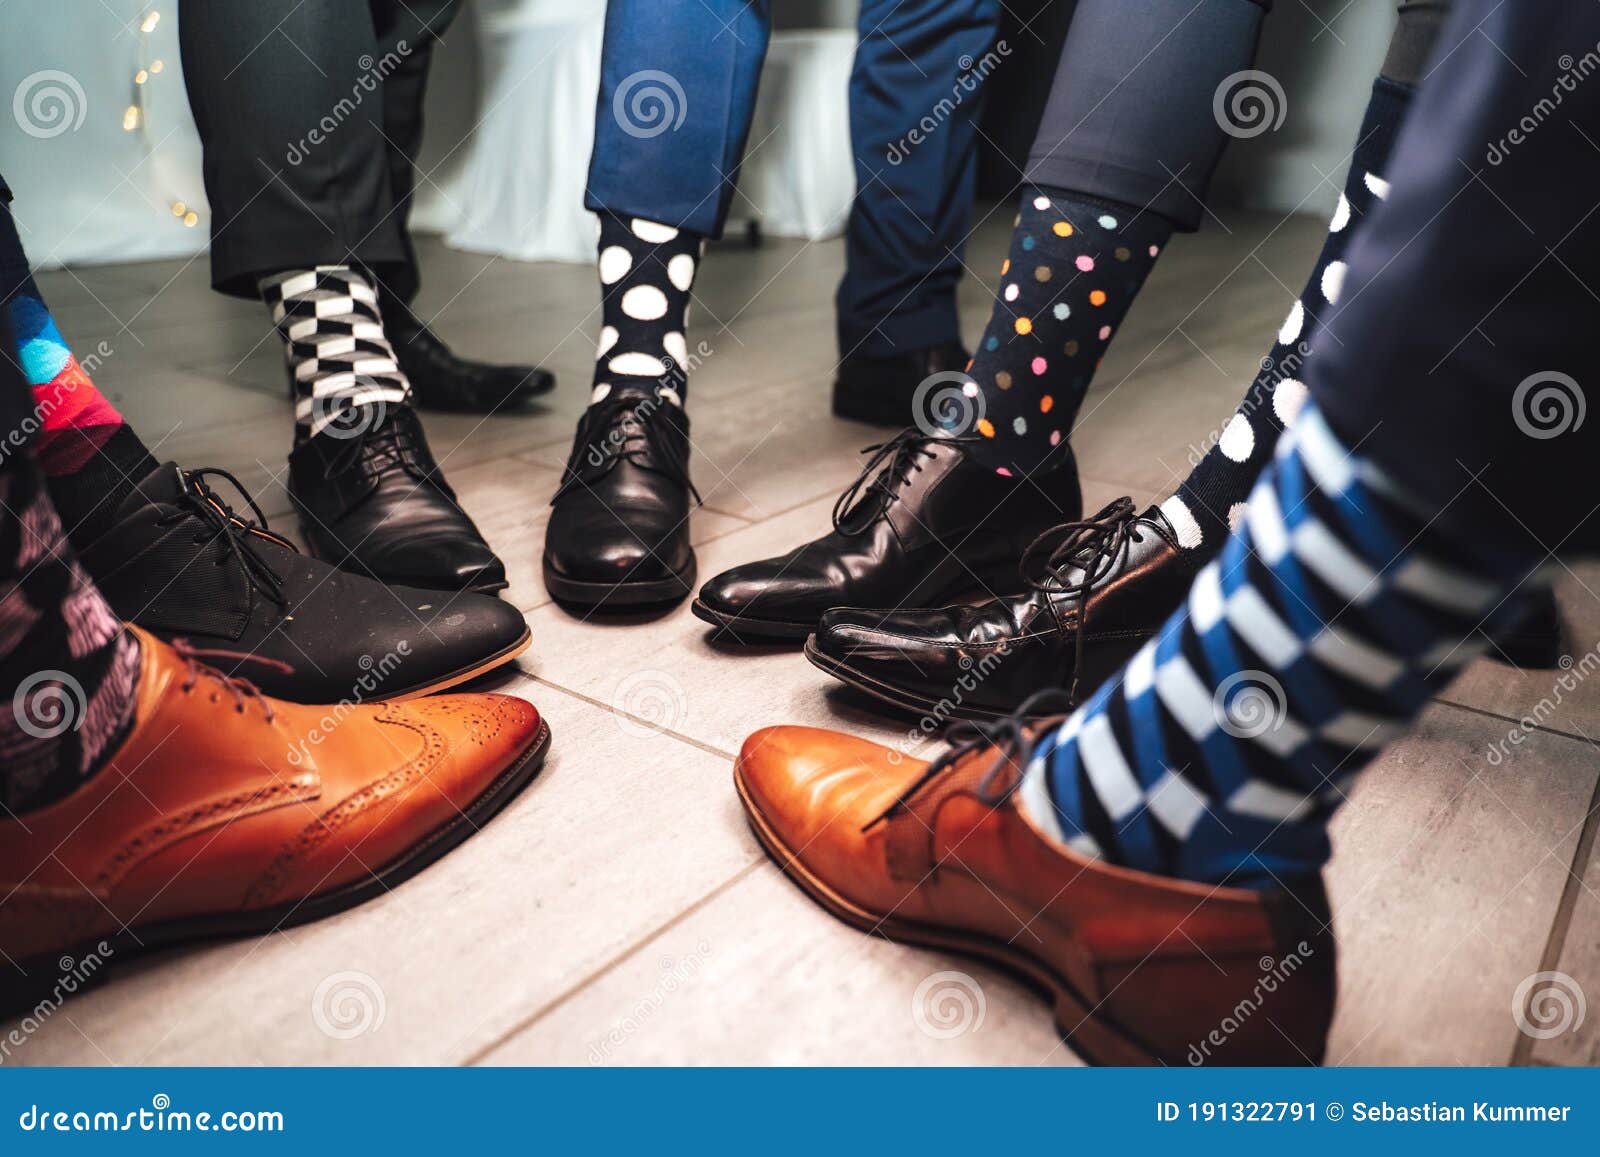 Cerrar Las Piernas De Los Zapatos Formales Y Calcetines Coloridos Divertidos. Siete Amigos Pies En Composición En C Imagen de archivo - Imagen de pierna, zapatos: 191322791